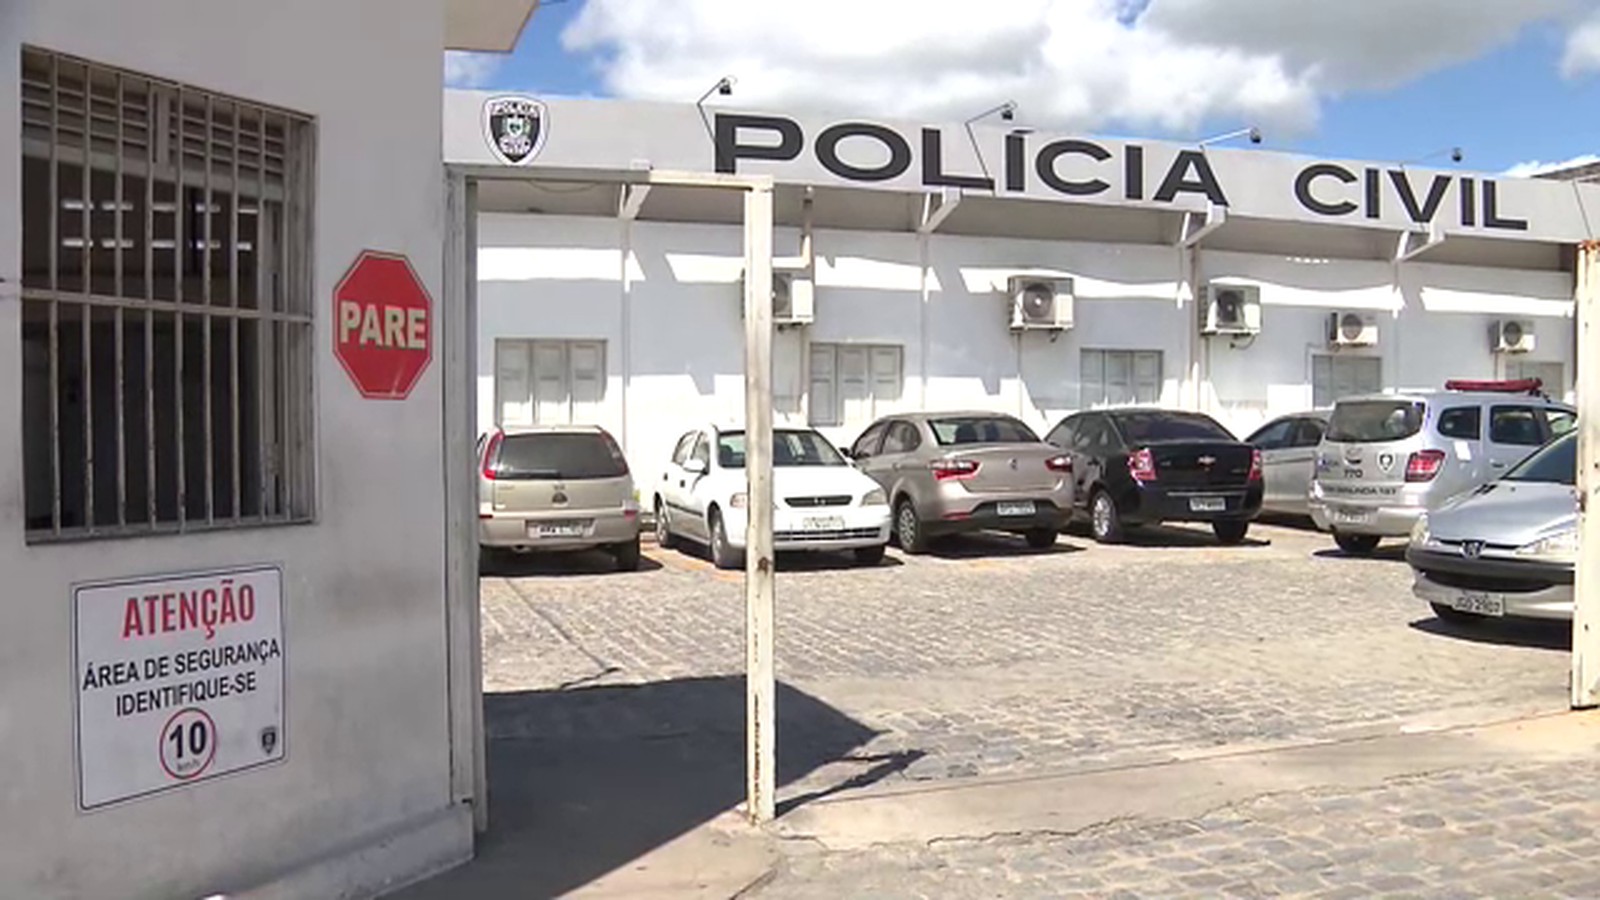 Suspeito deve ser encaminhado para Central de Polícia em Campina Grande